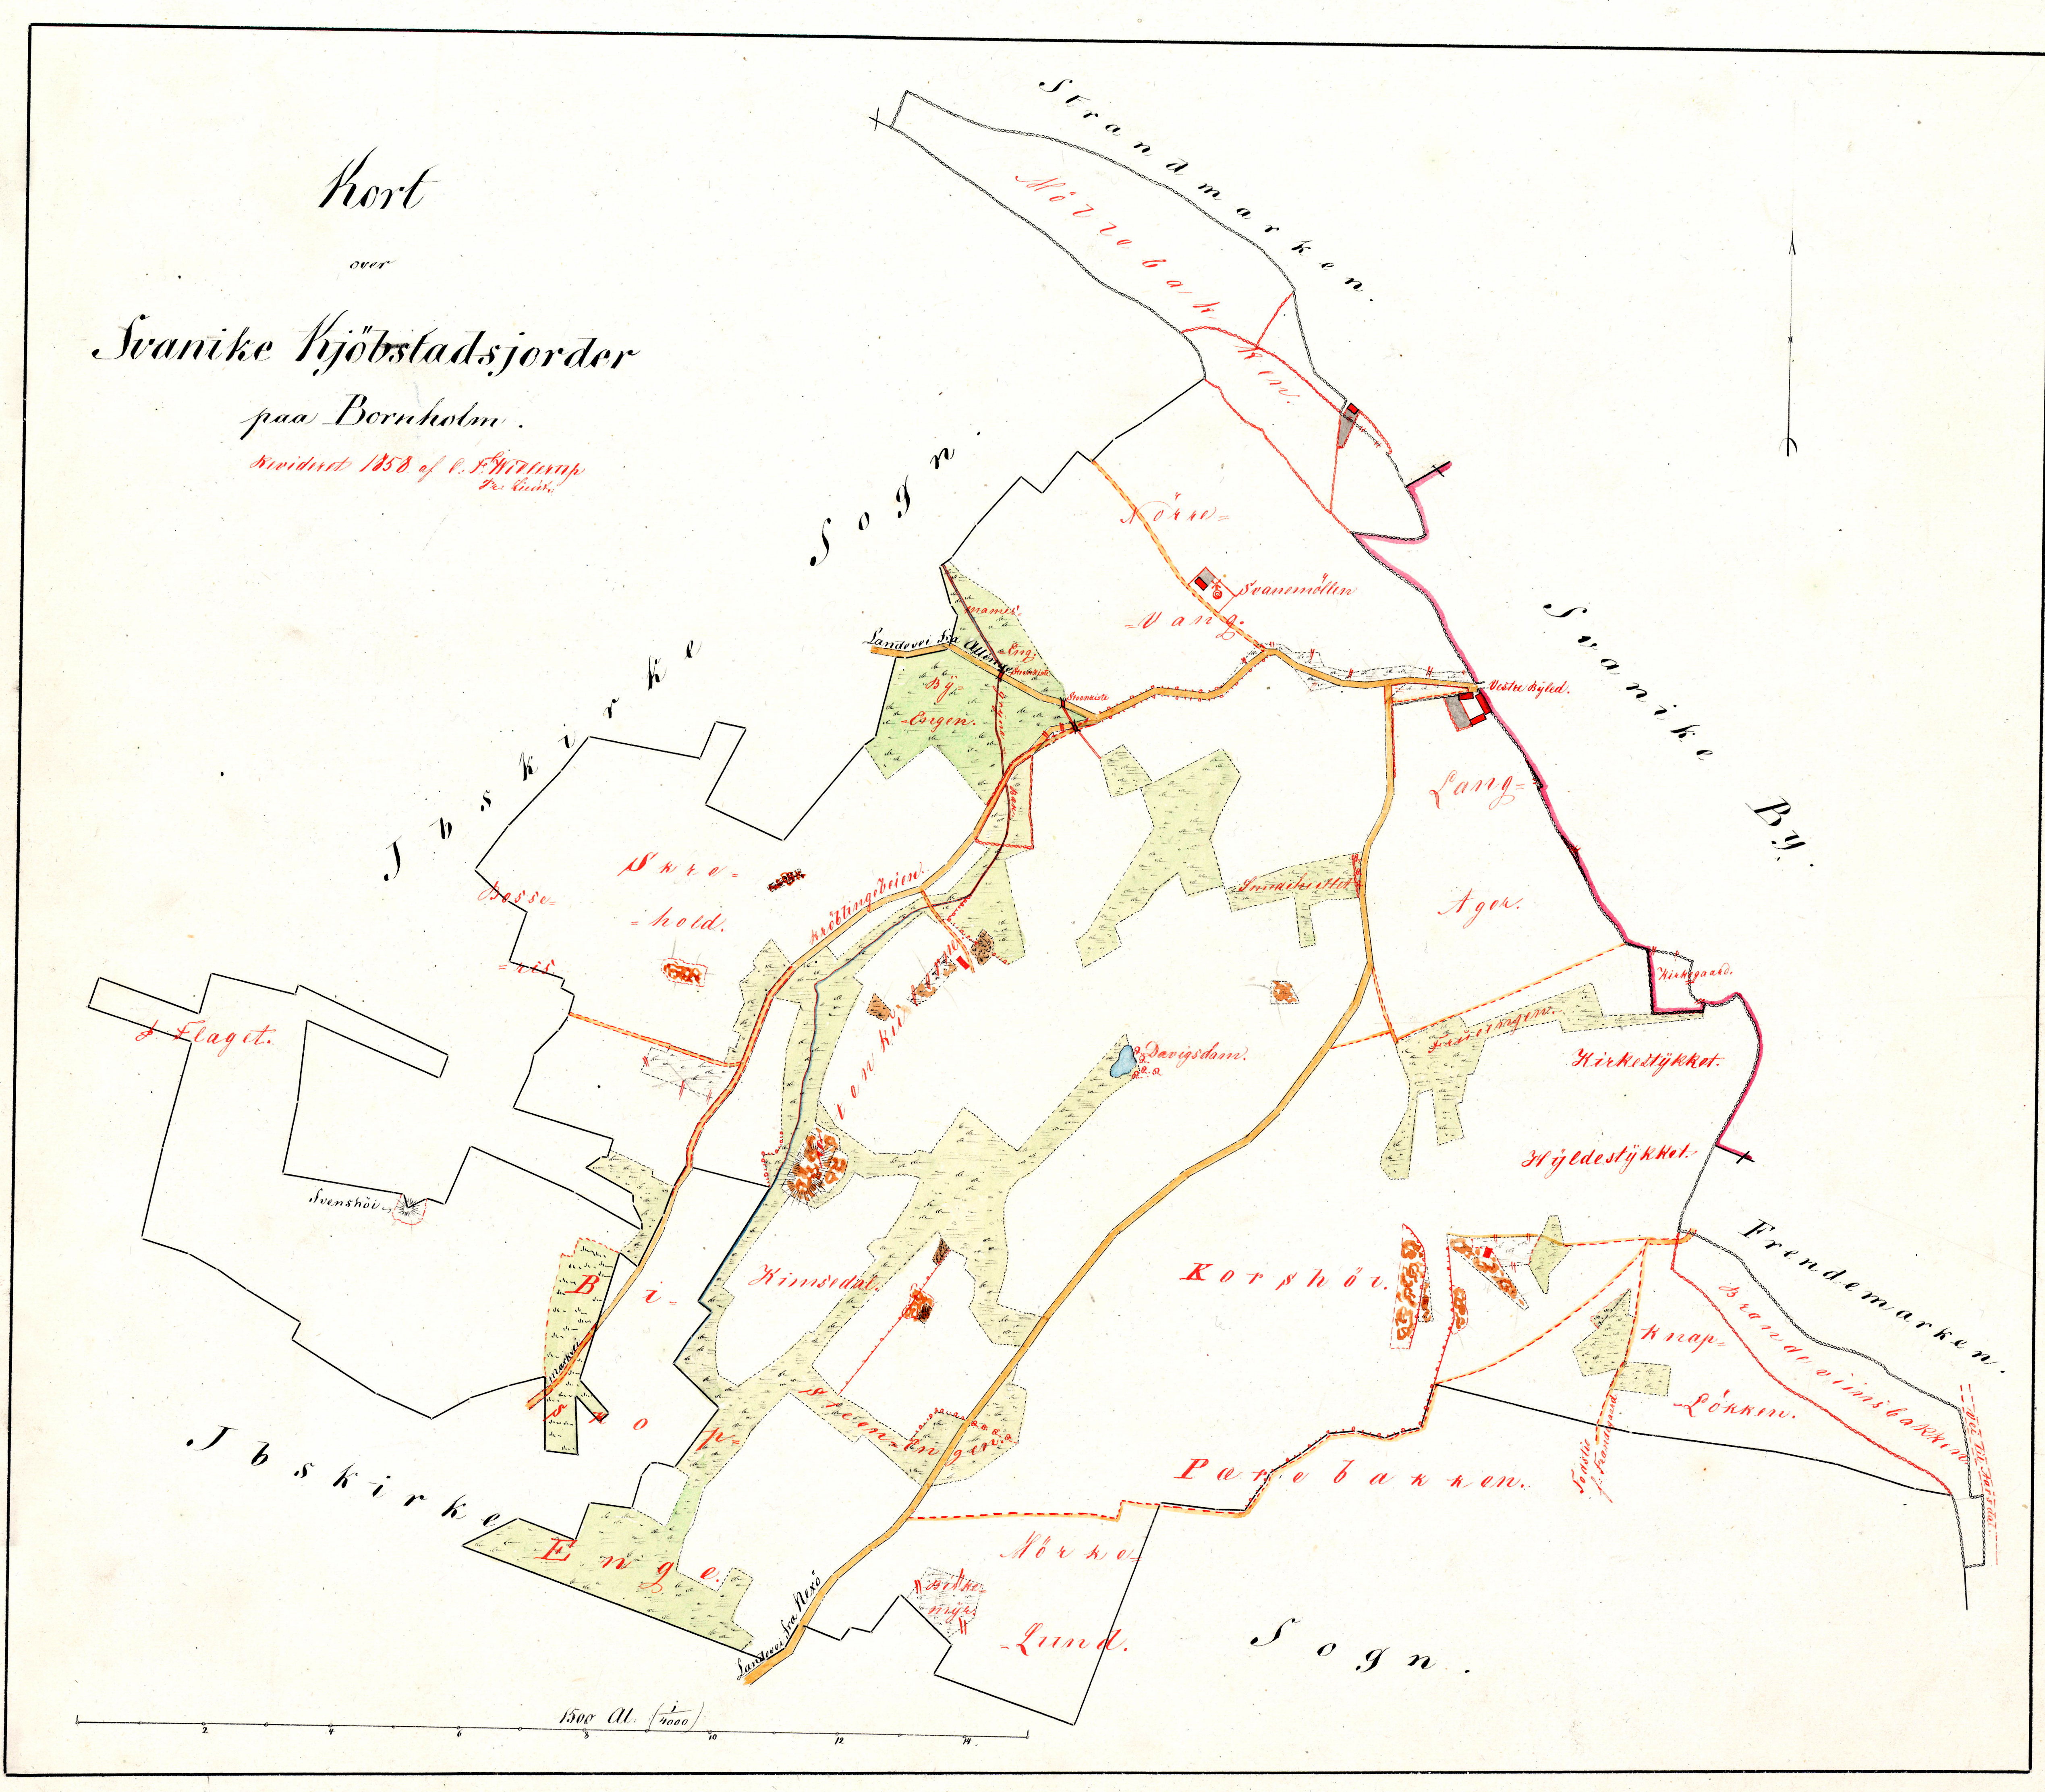 C.F.Willerups opmåling af Svaneke købstads jorder 1858